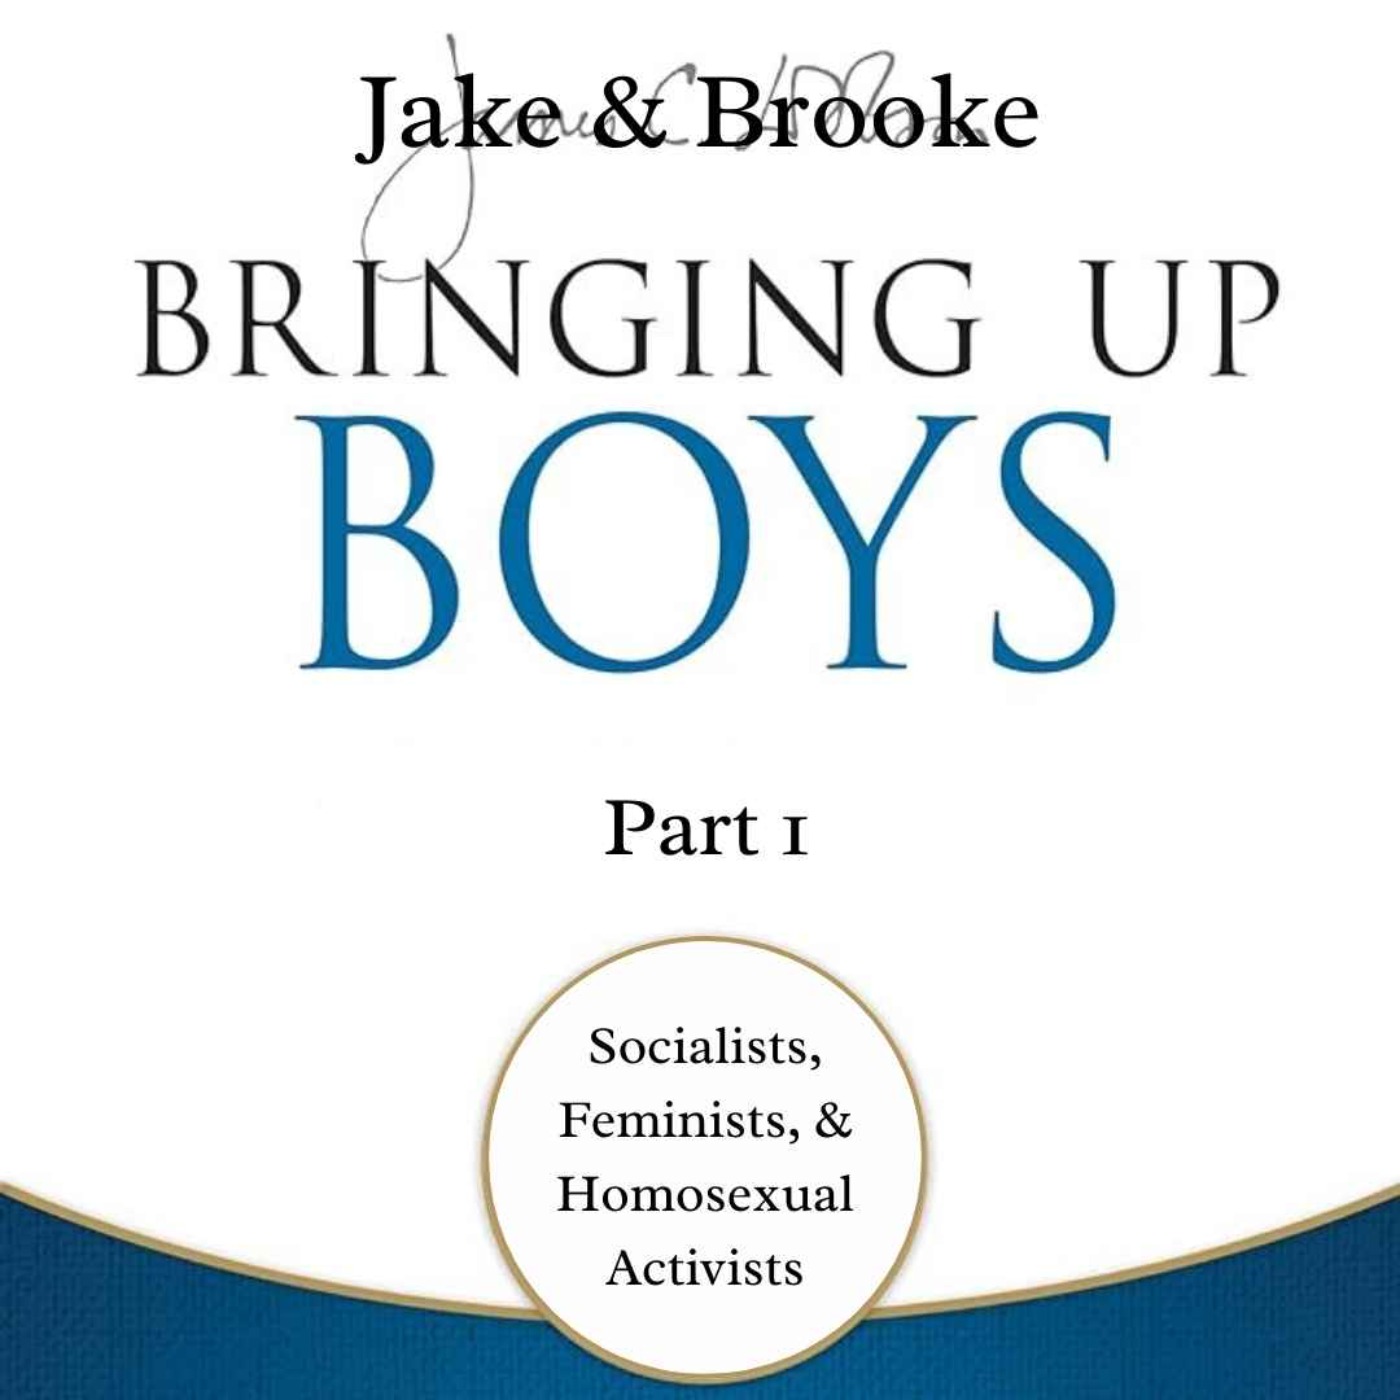 Episode 5: Bringing Up Boys - Part 1